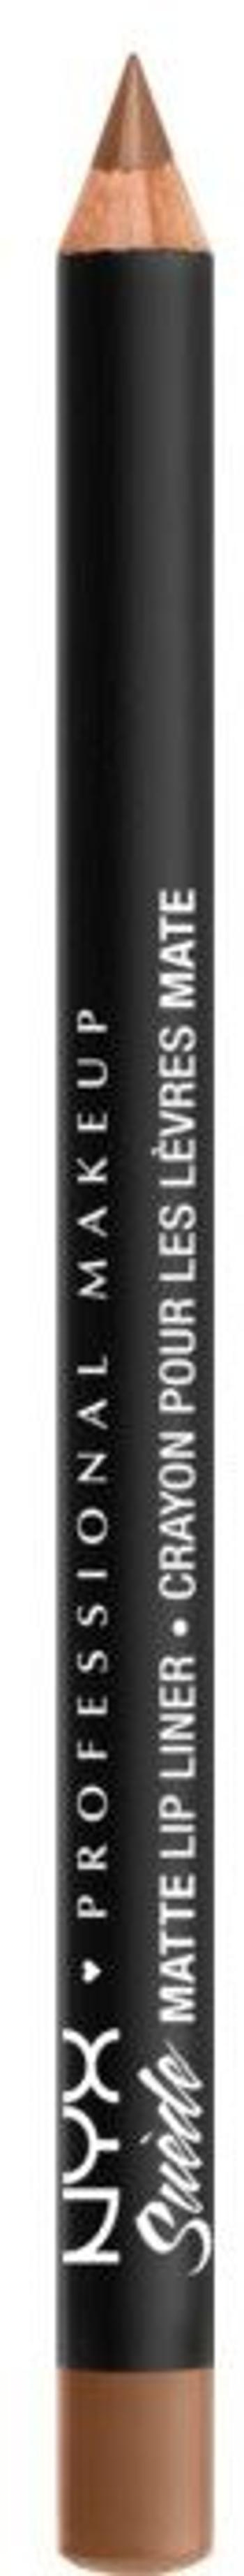 NYX Professional Makeup Suede Matte Lip Liner Konturovací tužka na rty - Sandstorm 1 g